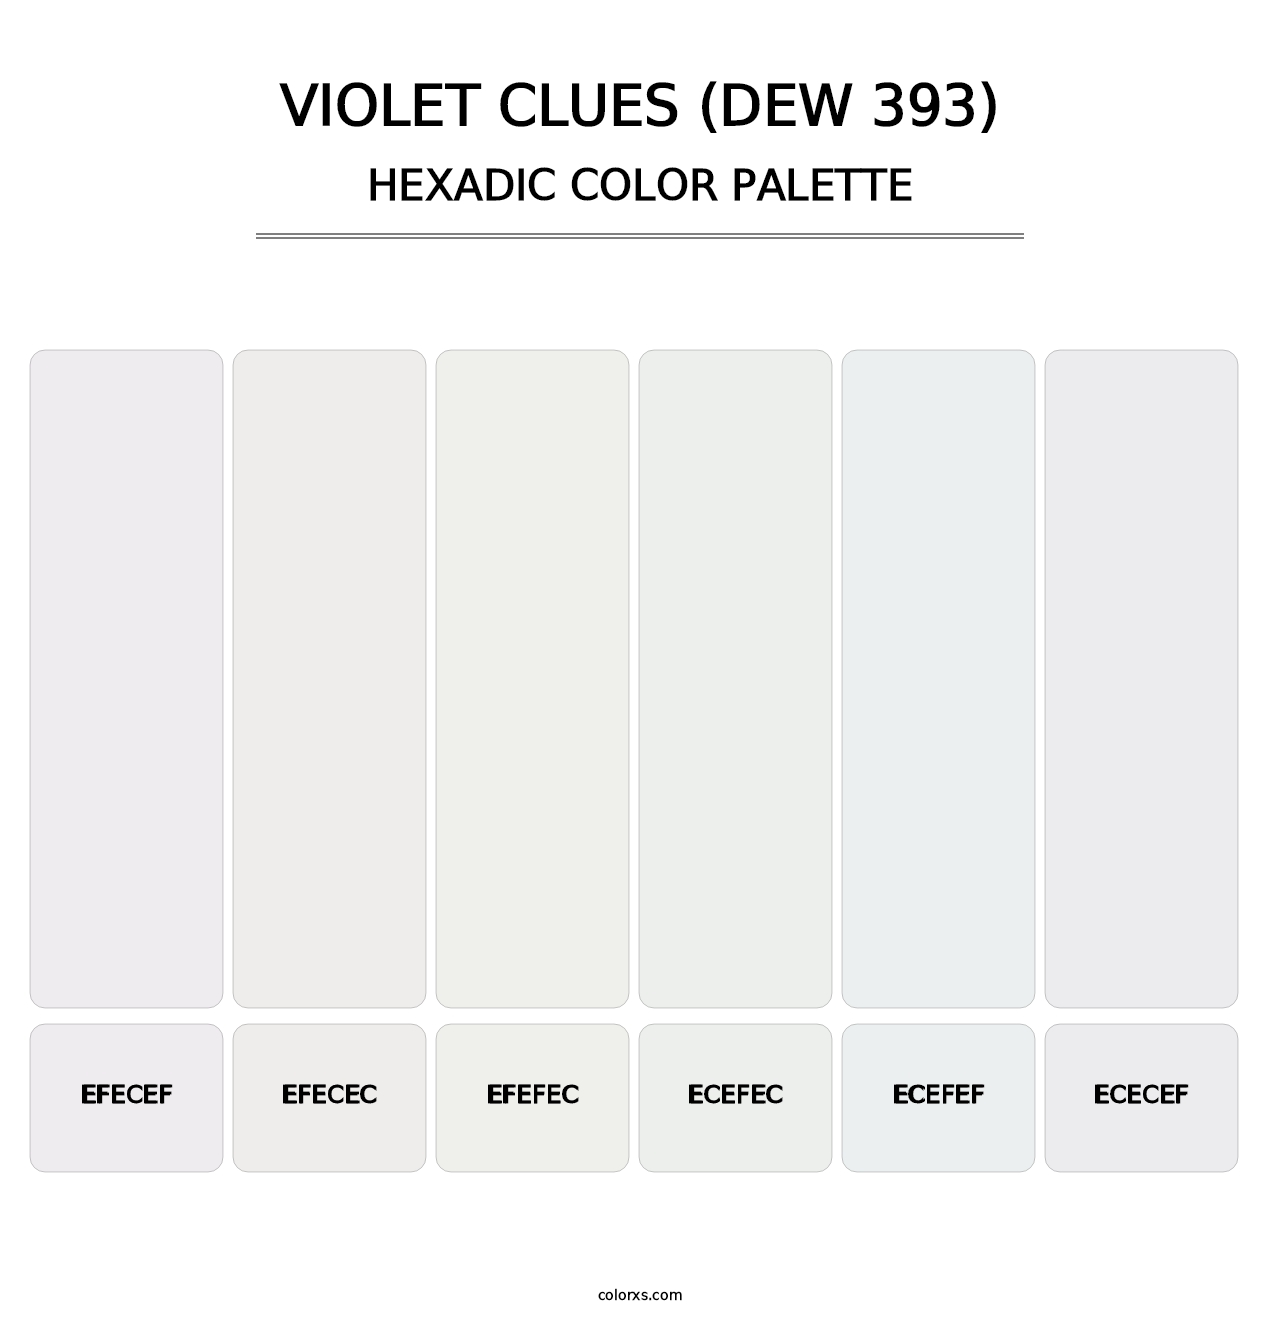 Violet Clues (DEW 393) - Hexadic Color Palette